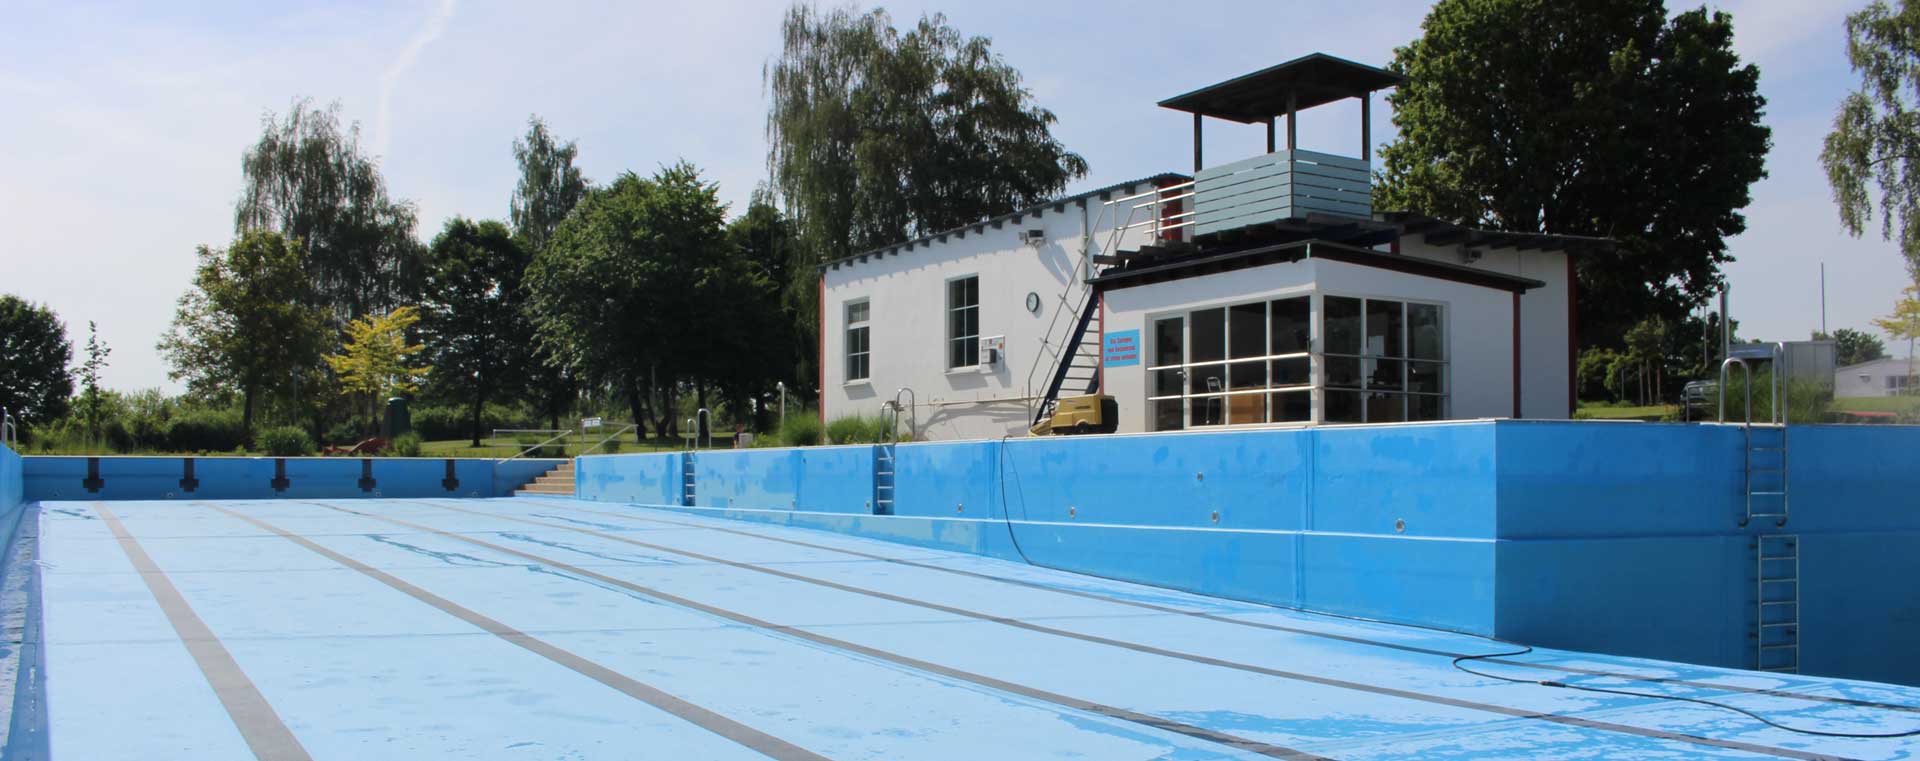 Noch ist es leer, das Schwimmbecken des Abensberger Freibades. Doch bis zum 11. Juni wird es befüllt sein. (Foto: Ingo Knott/Stadt Abensberg)